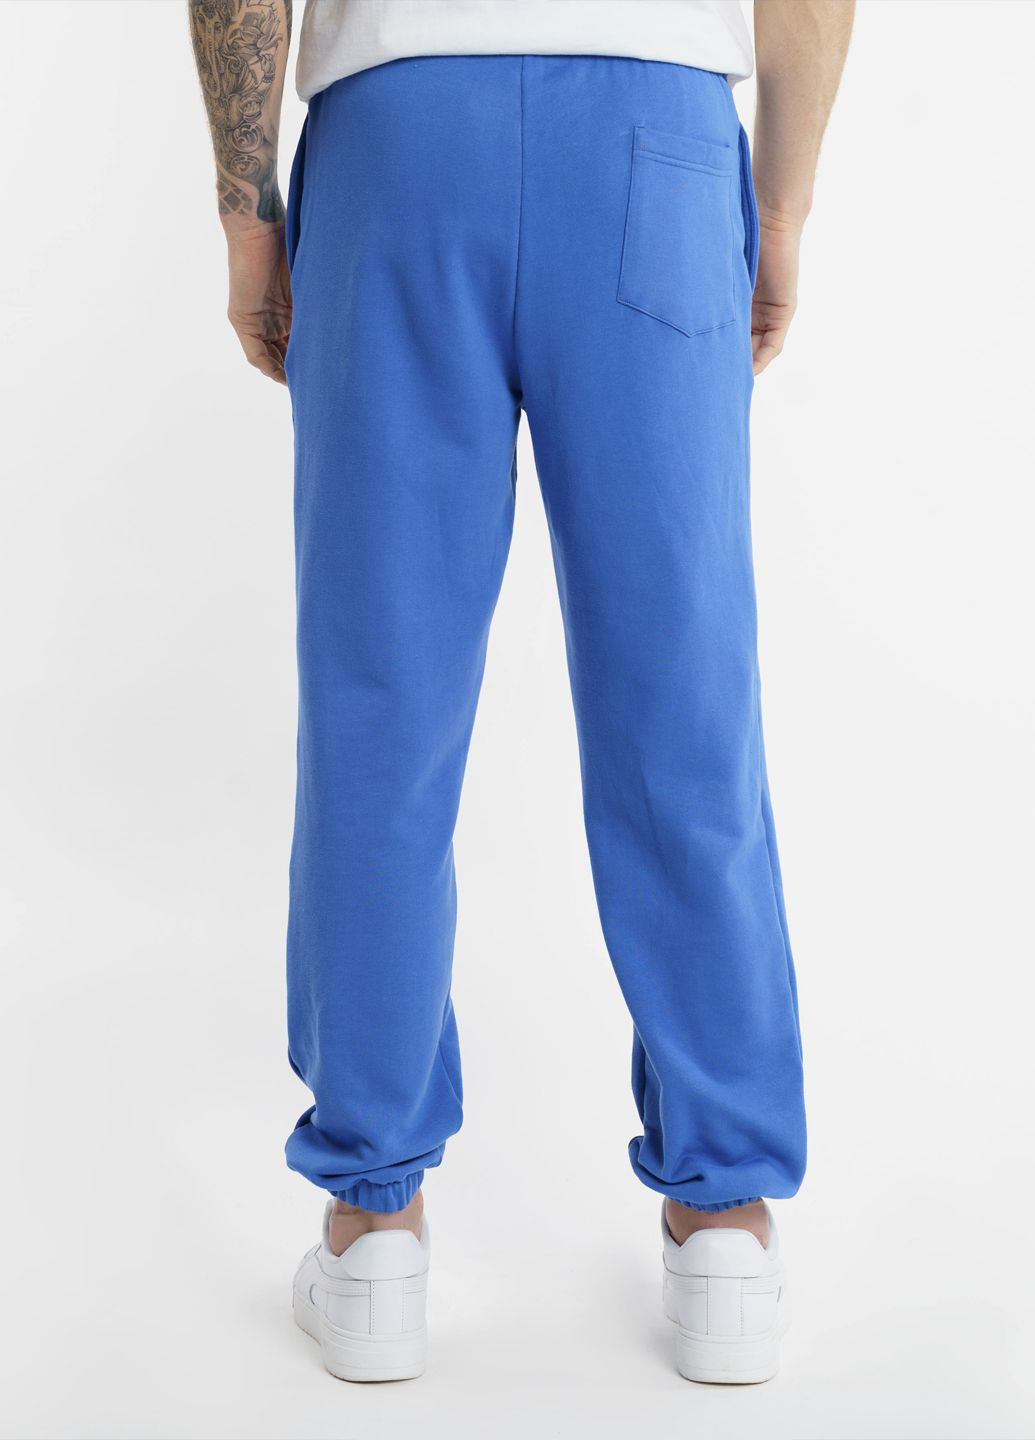 Спортивні штани чоловічі Freedom сині Arber sportpants m-sbr6 (282955297)